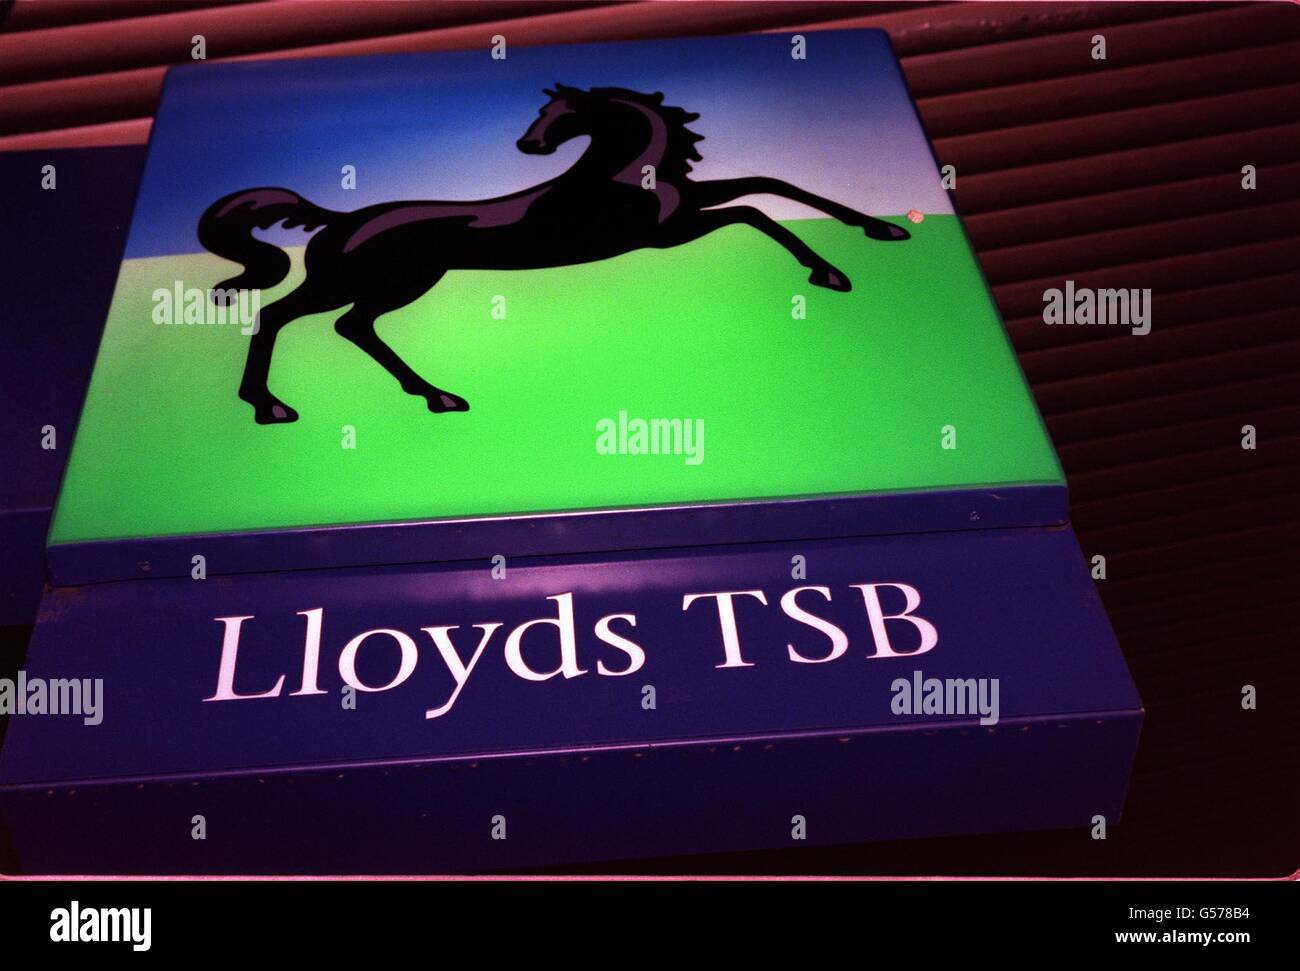 Il logo Lloyds TSB Bank Black Horse si trova all'esterno di una filiale nel centro di Londra. La proposta di Lloyds TSB di acquisire Abbey National ha fatto un passo avanti dopo aver presentato i dettagli dell'accordo previsto all'Ufficio del commercio equo e solidale. * il gruppo, che ha gatecrasato i piani di Abbey di fondersi con Bank of Scotland con un approccio di acquisizione non richiesto, ha detto che i dettagli sono stati inviati. *11/12/03: Centinaia di lavoratori del gigante bancario Lloyds TSB iniziavano a votare se colpire in protesta per la chiusura di un call center. I membri di Unifi sono in volo nelle prossime settimane come parte di un'Unione Foto Stock